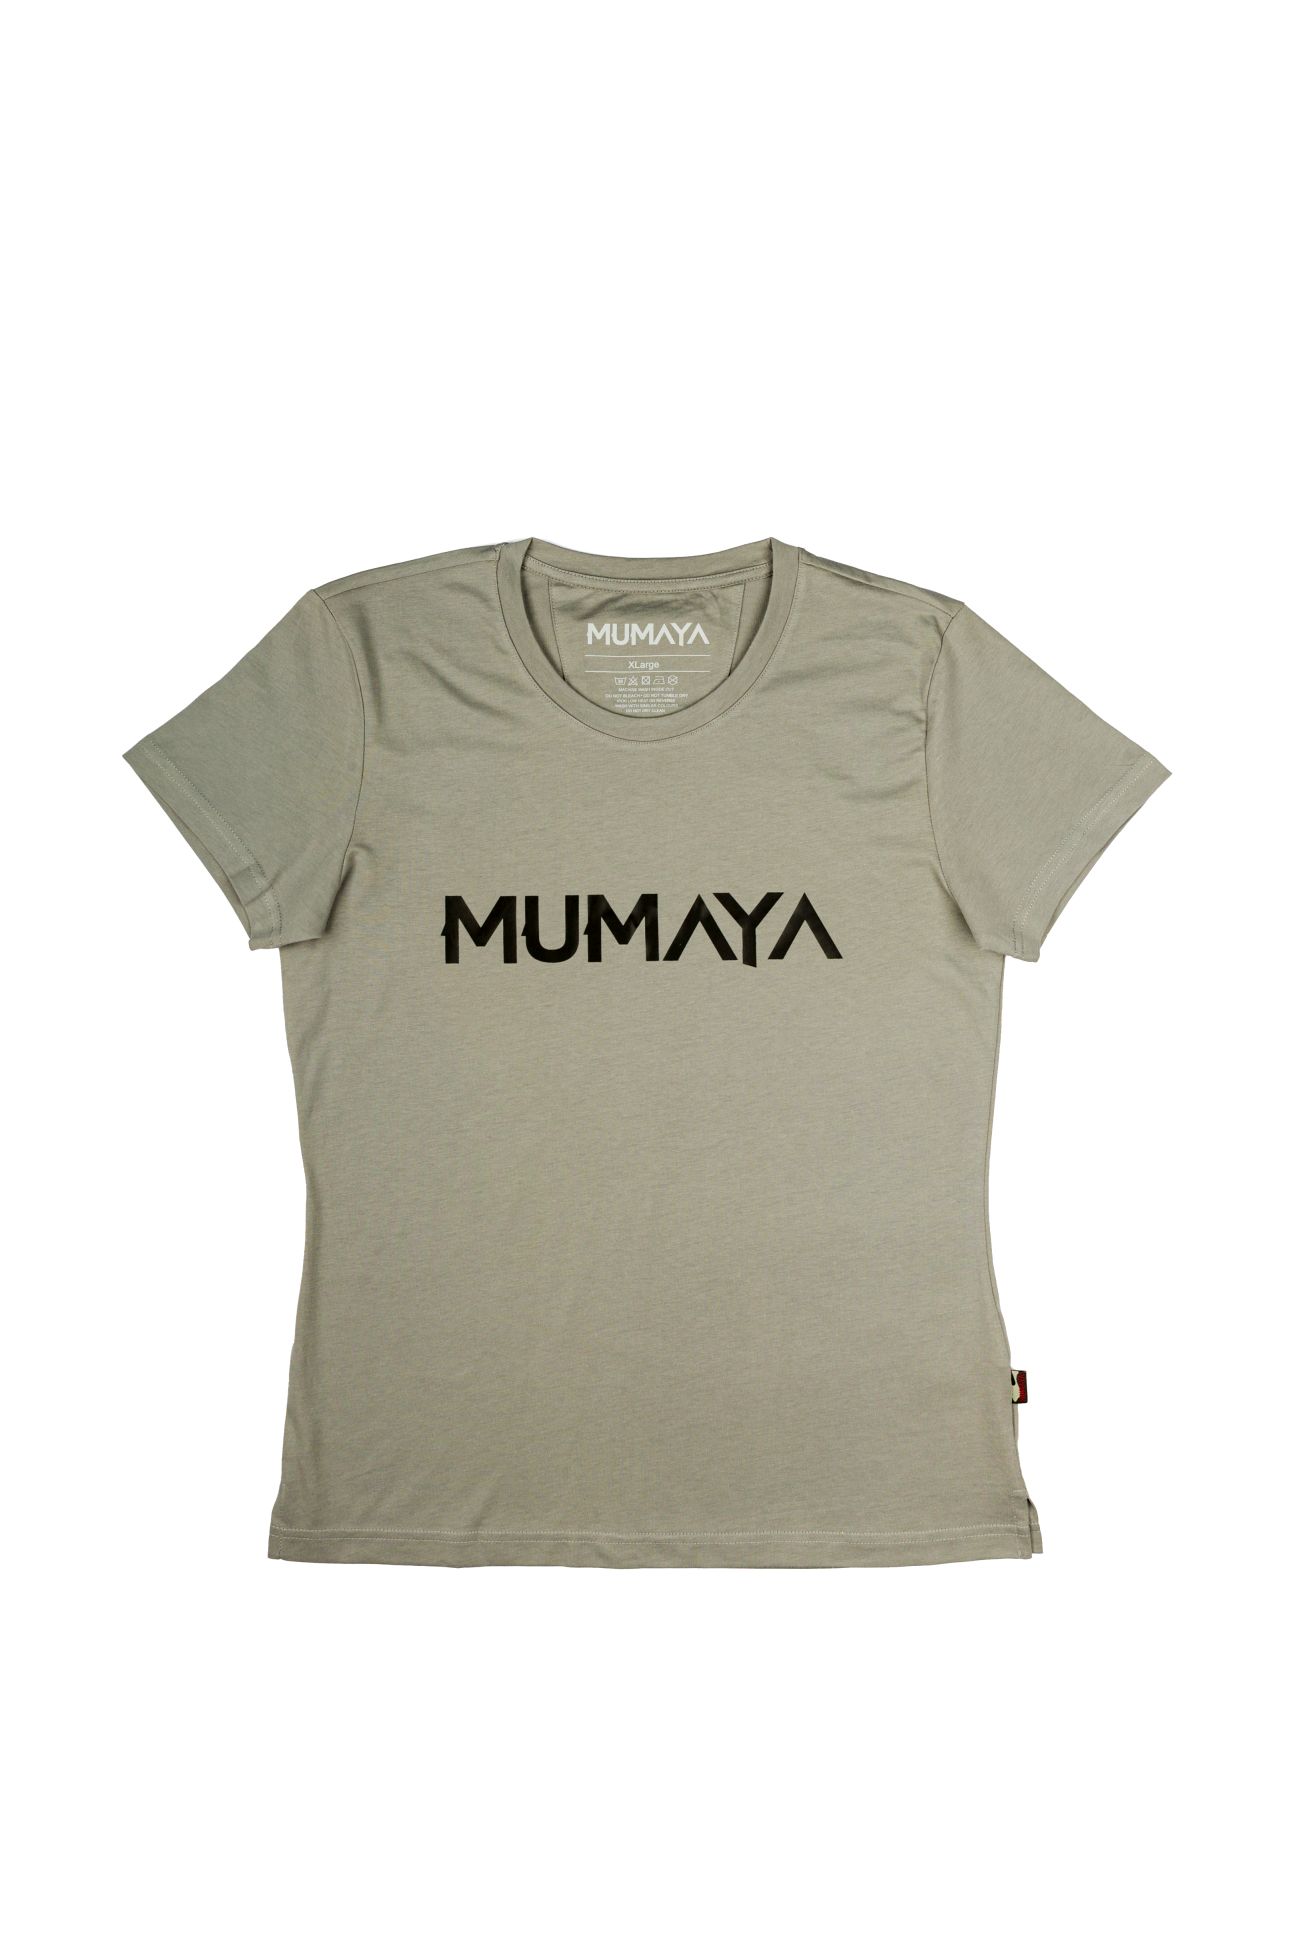 Mumaya BaselineShirt Lady Grey